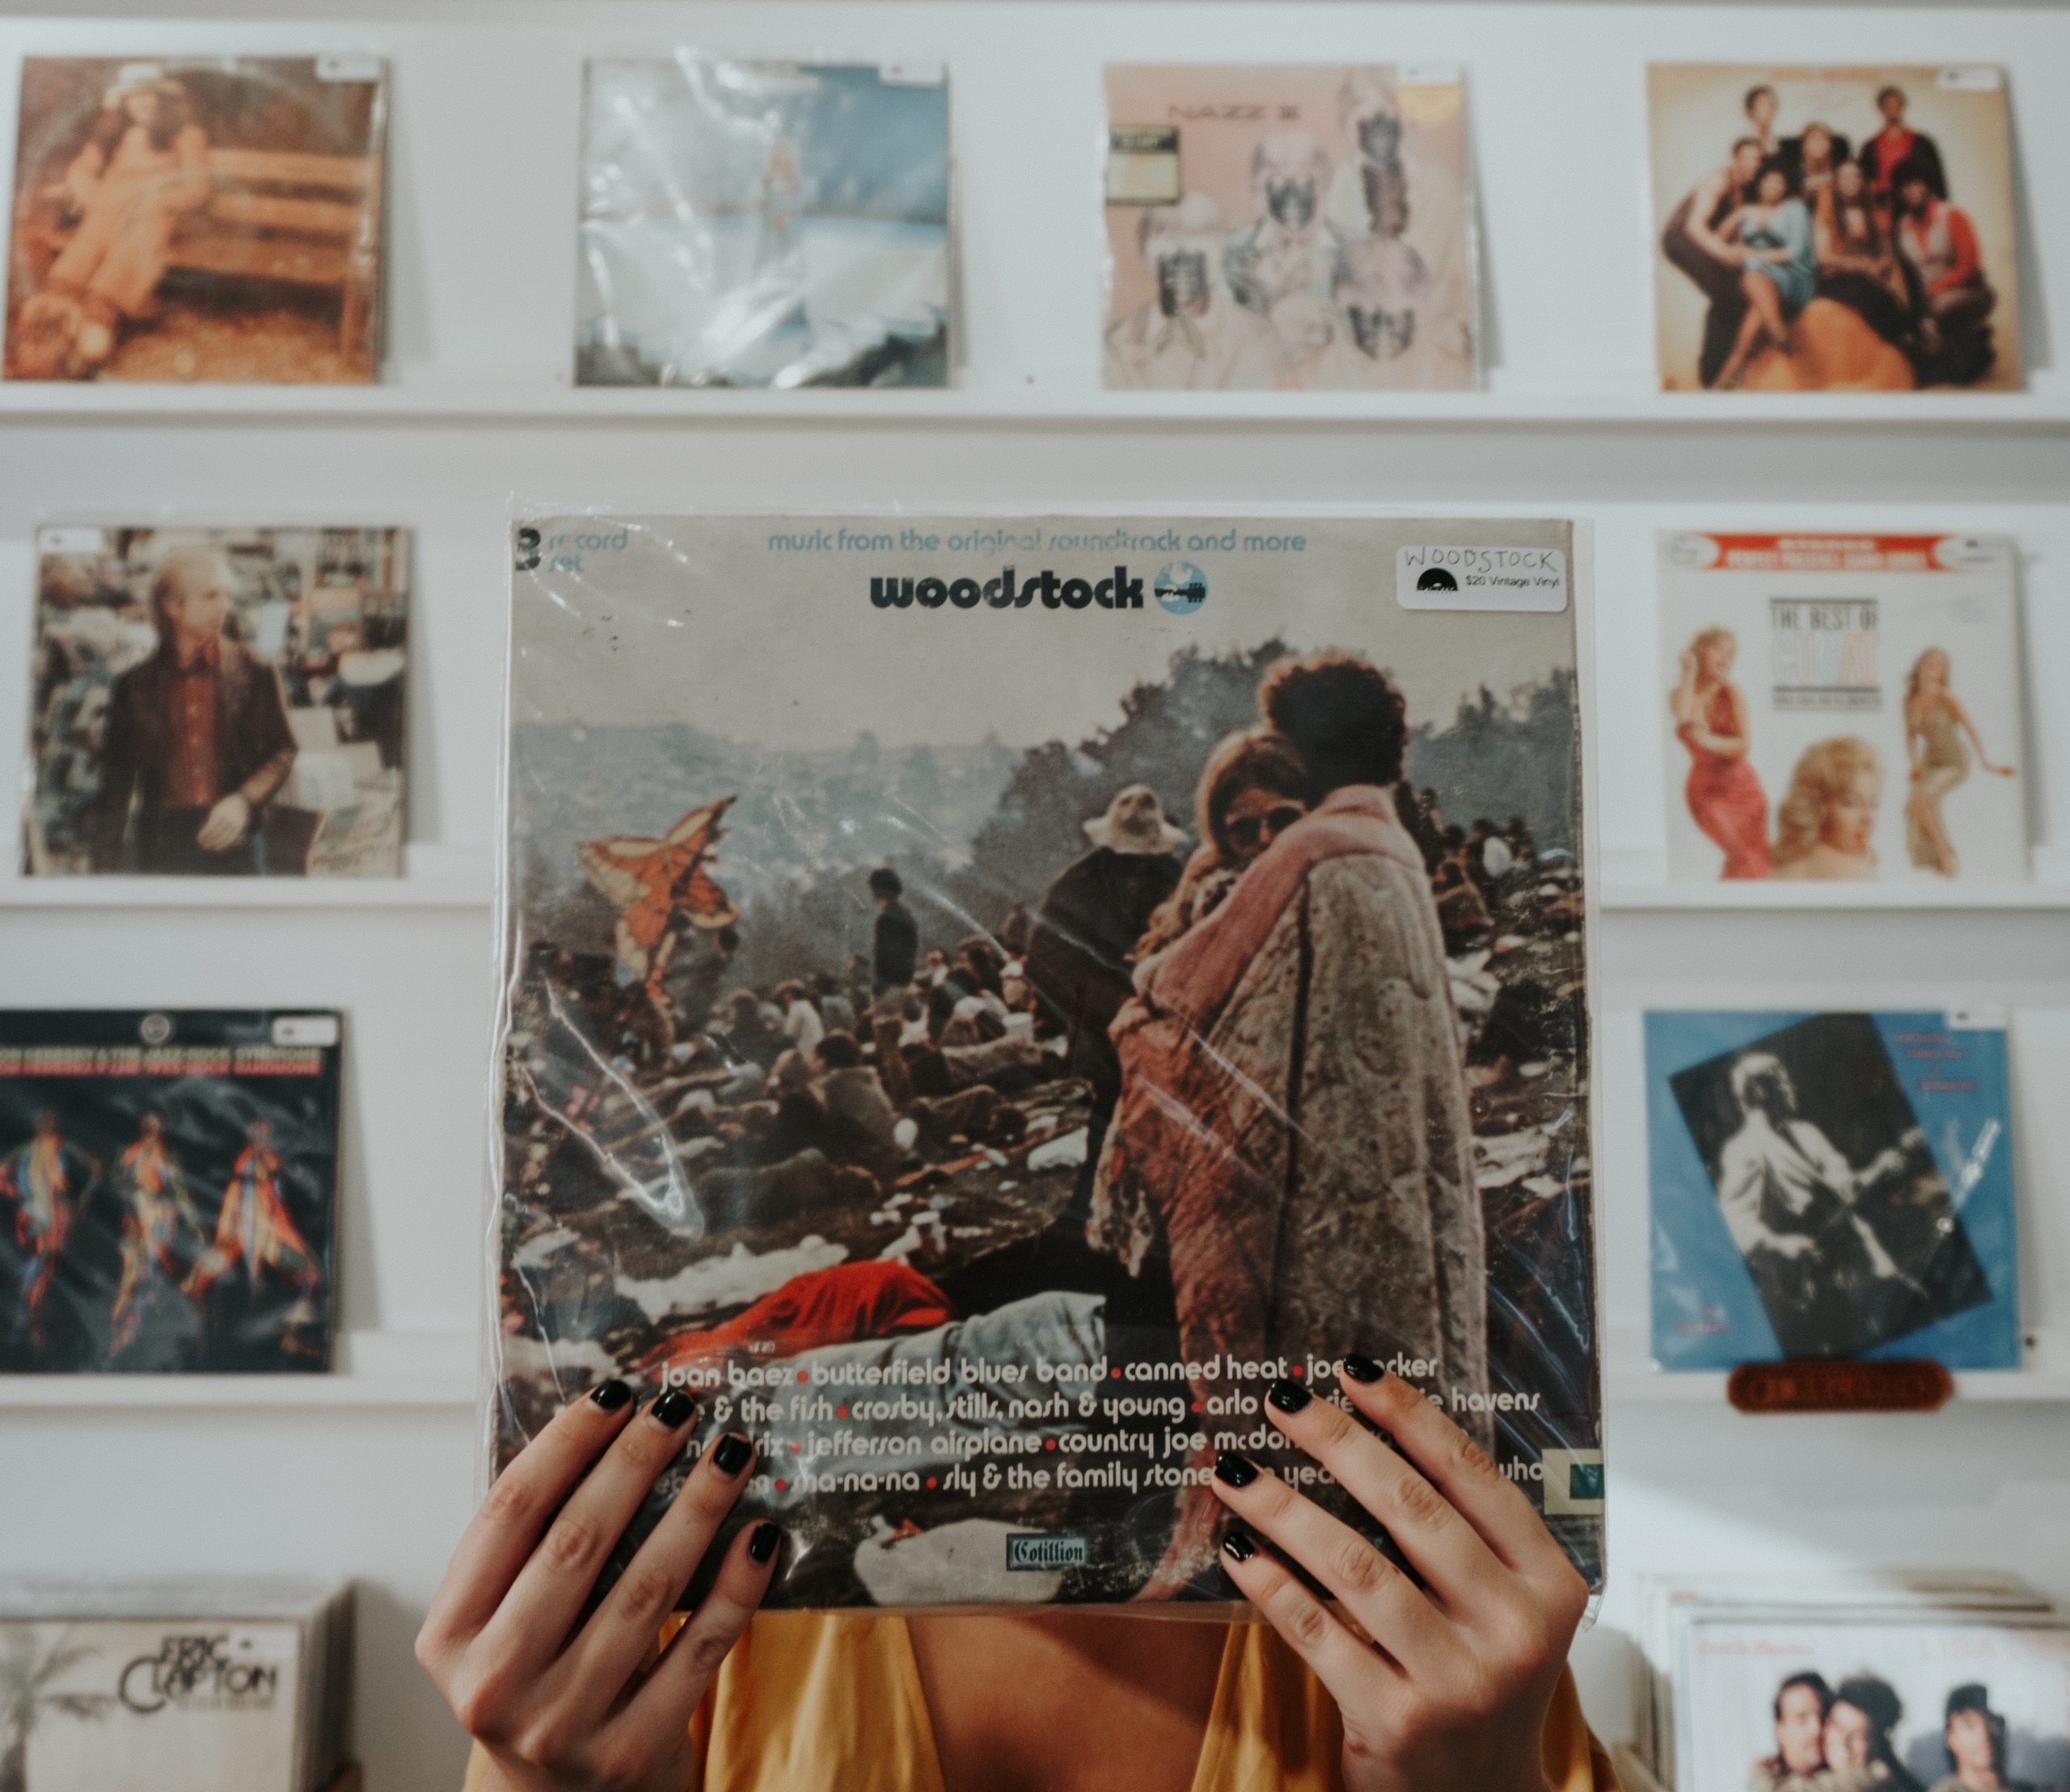 Hands on a Woodstock vinyl album